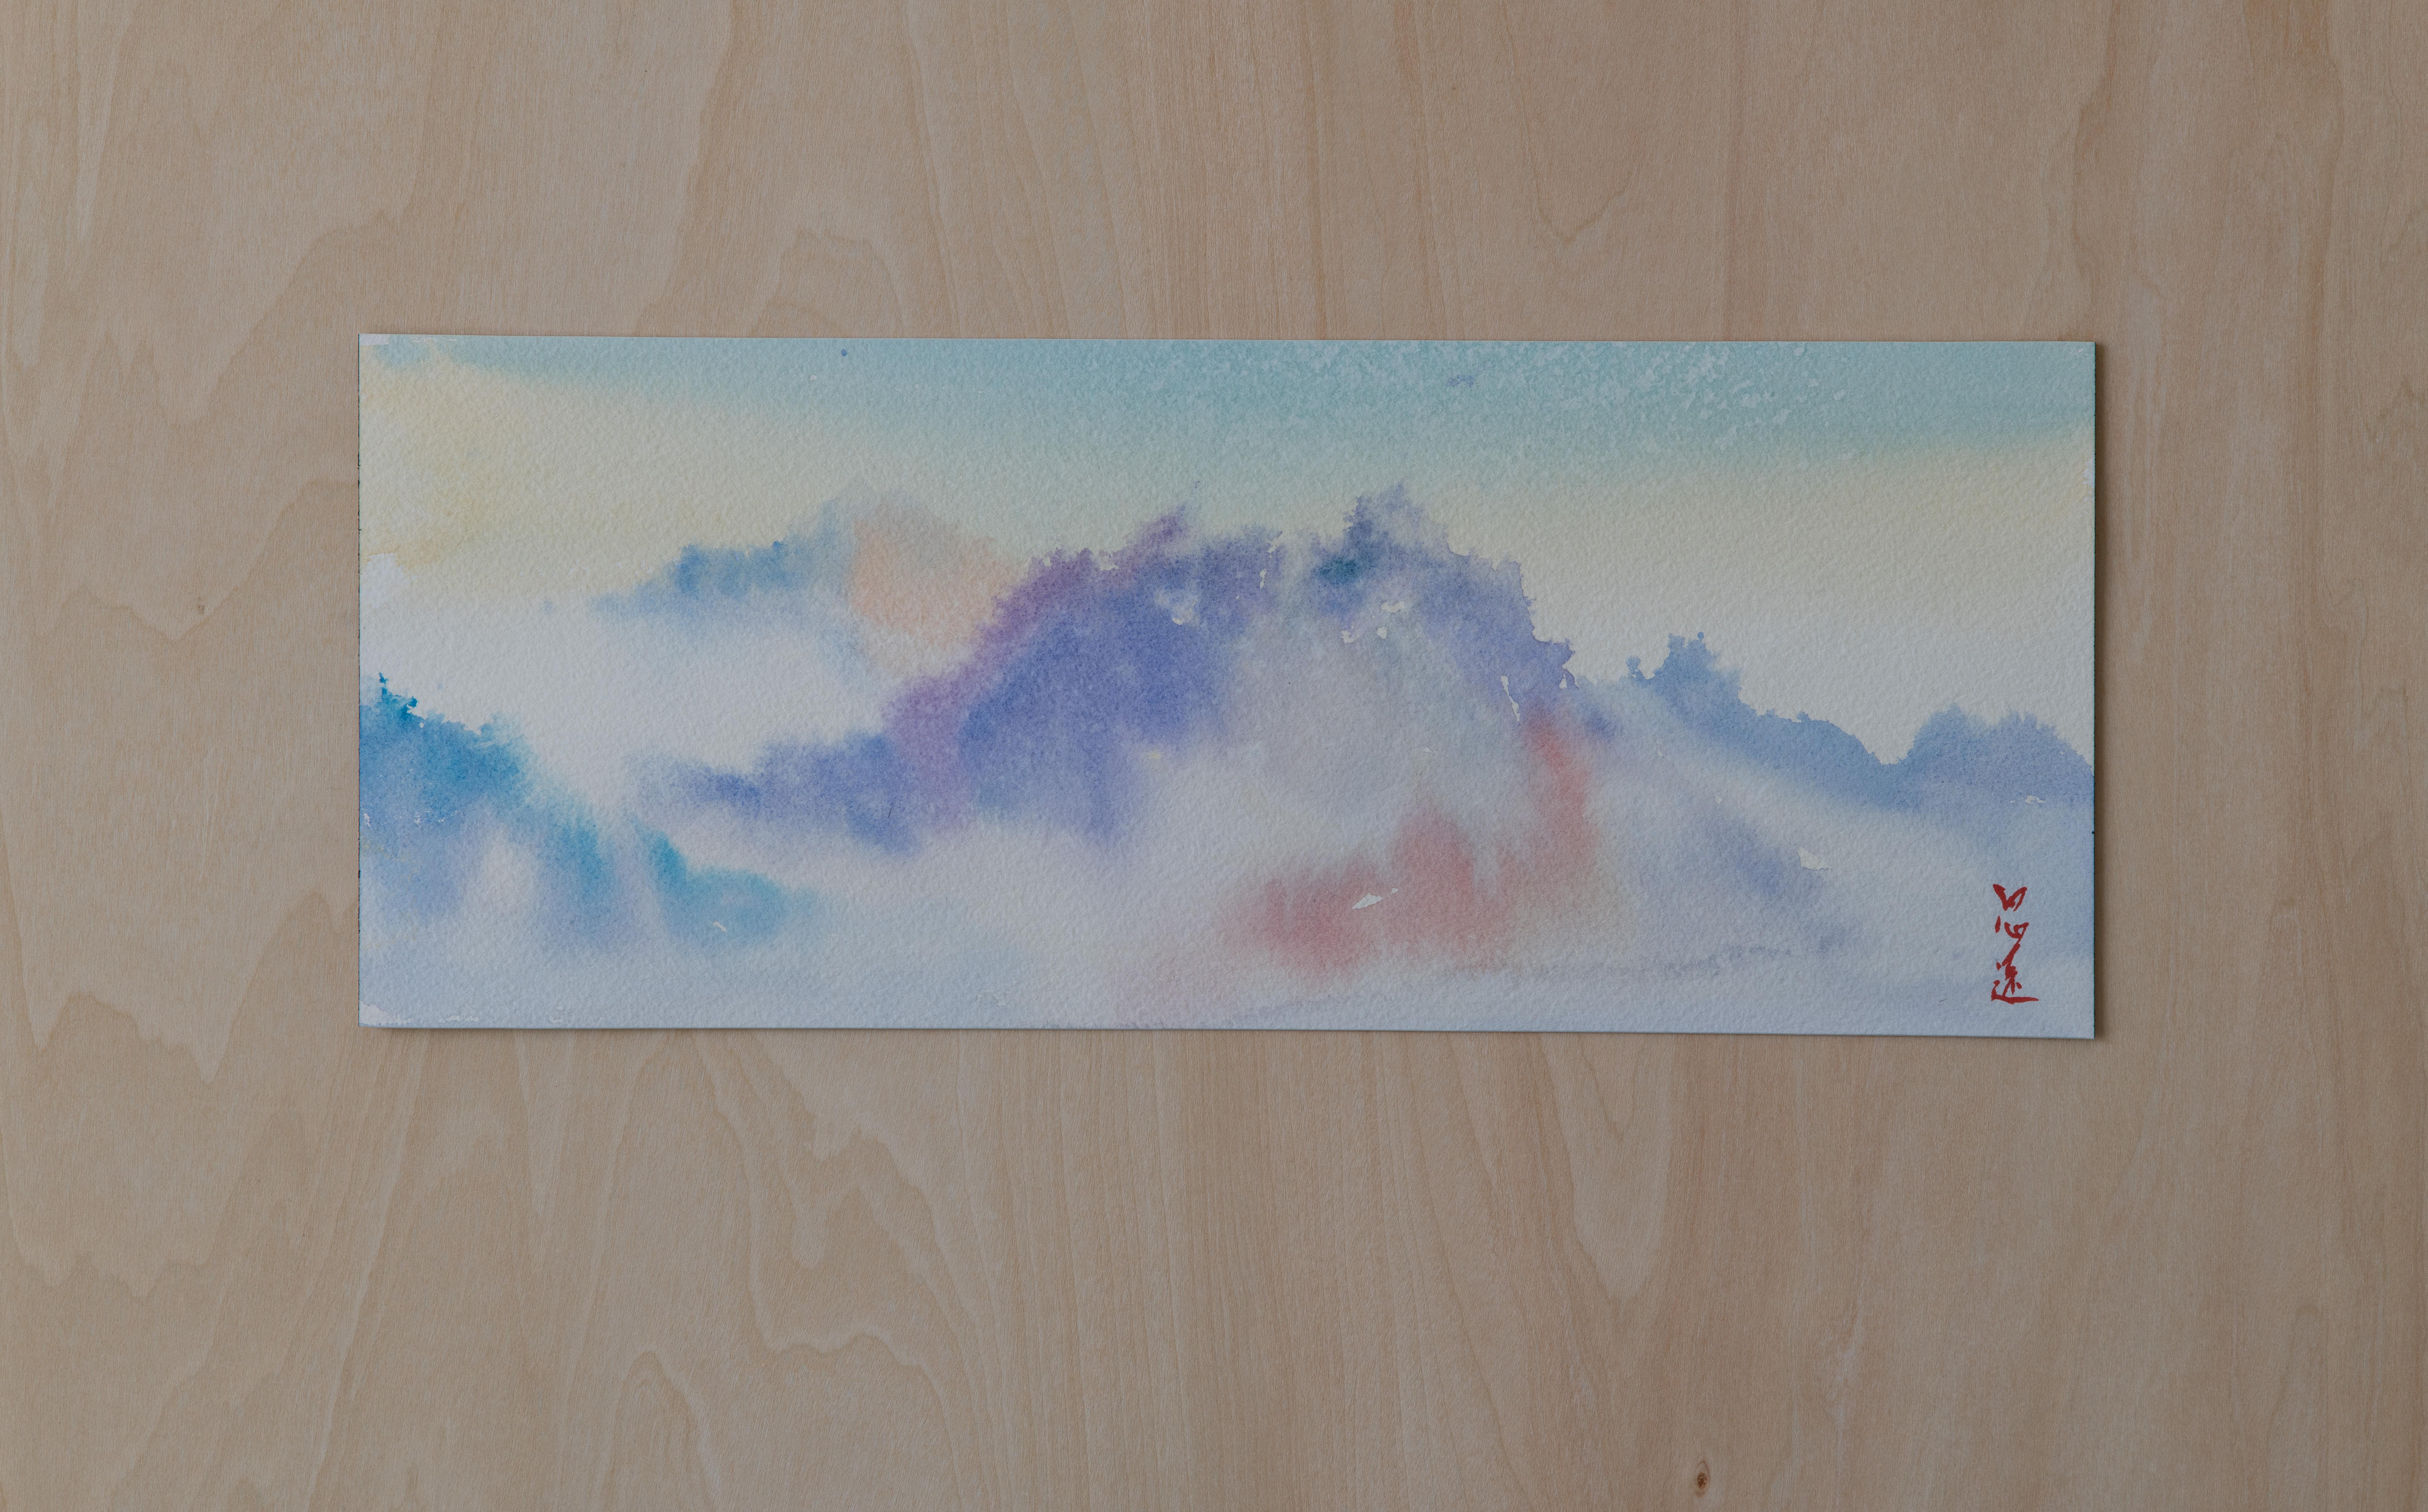 <p>Kommentare des Künstlers<br>Der Künstler Siyuan Ma zeigt eine ätherische Aussicht auf eine verschneite Bergkette mit einem abstrakten Ansatz. Nach dem Regen scheint das Sonnenlicht auf die Wassertröpfchen in der Luft. Durch Brechung und Reflexion